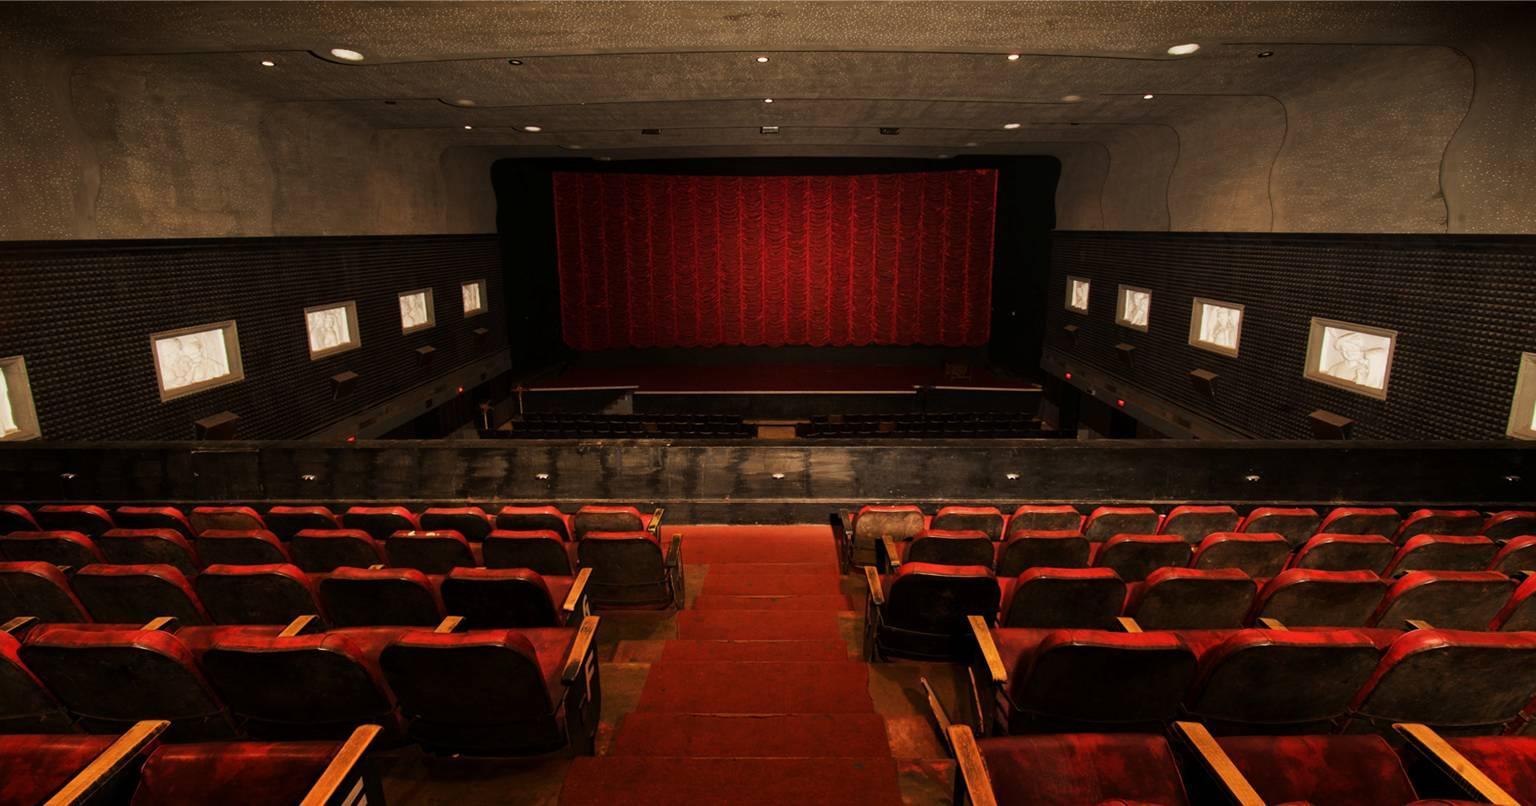 Cinemas reopen: फिल्म इंडस्ट्री के लिए बड़े दिन बाद आई गुडन्यूज, अनलॉक 5.0 में 15 अक्टूबर से खुलेंगे सिनेमाघर